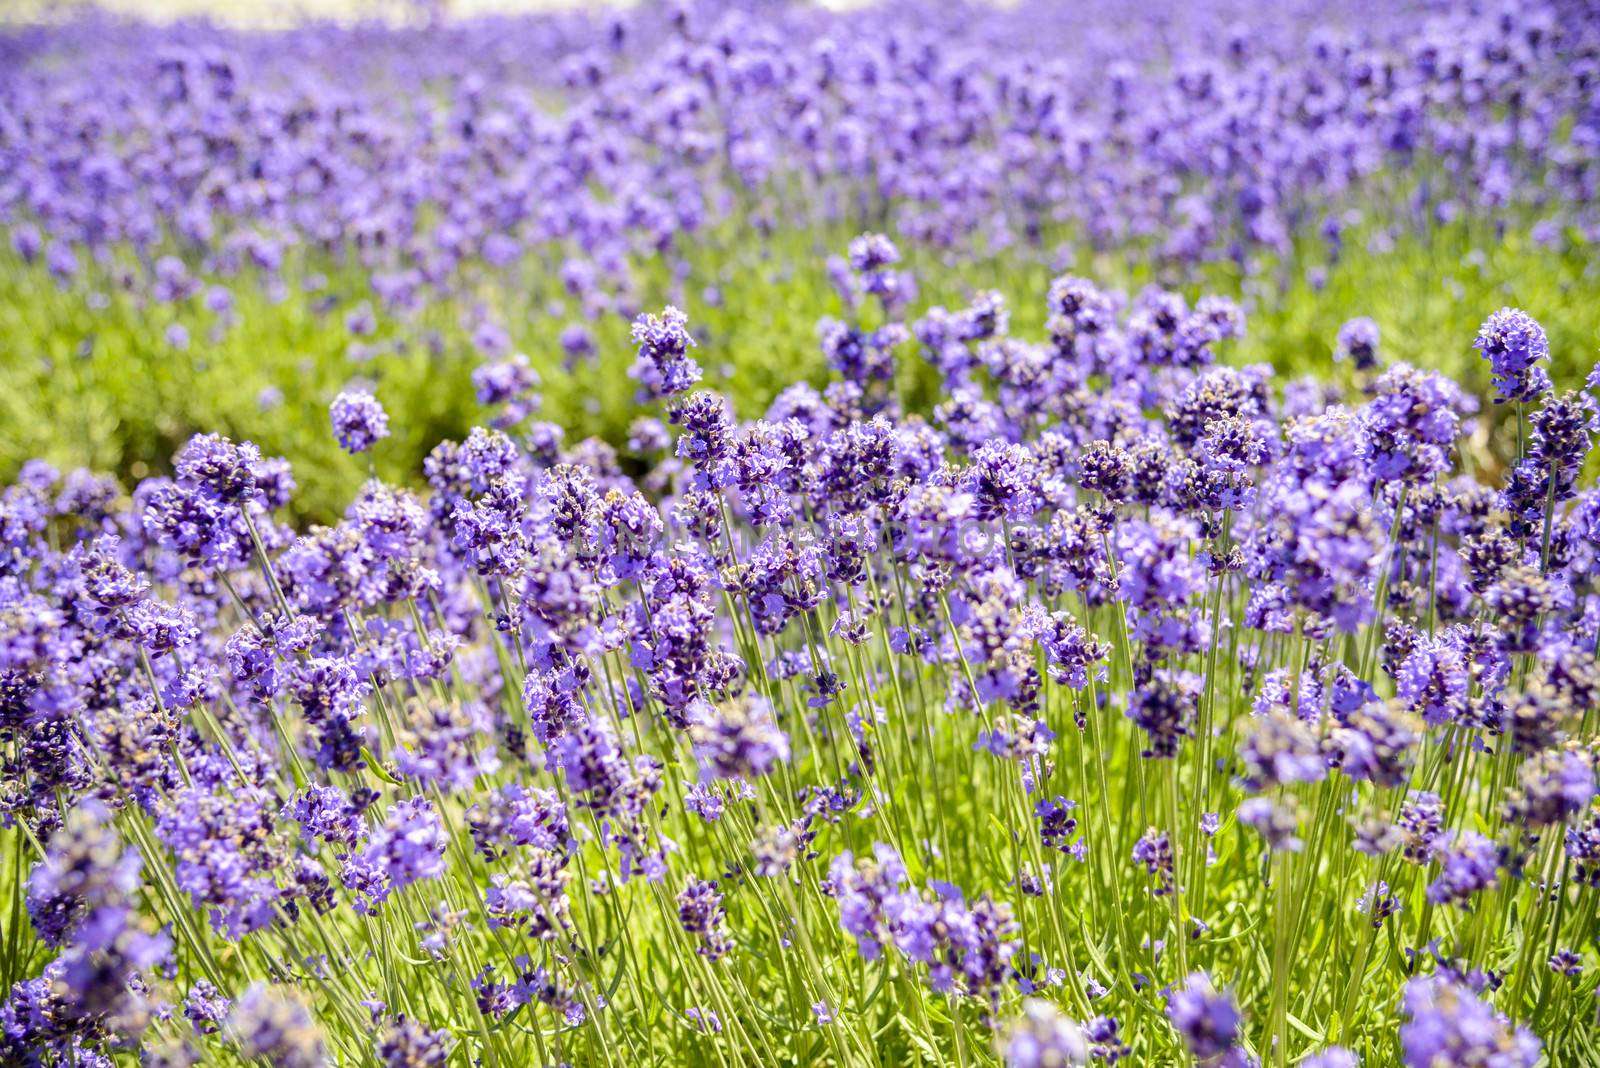 Plenty Lavender in the field1 by gjeerawut